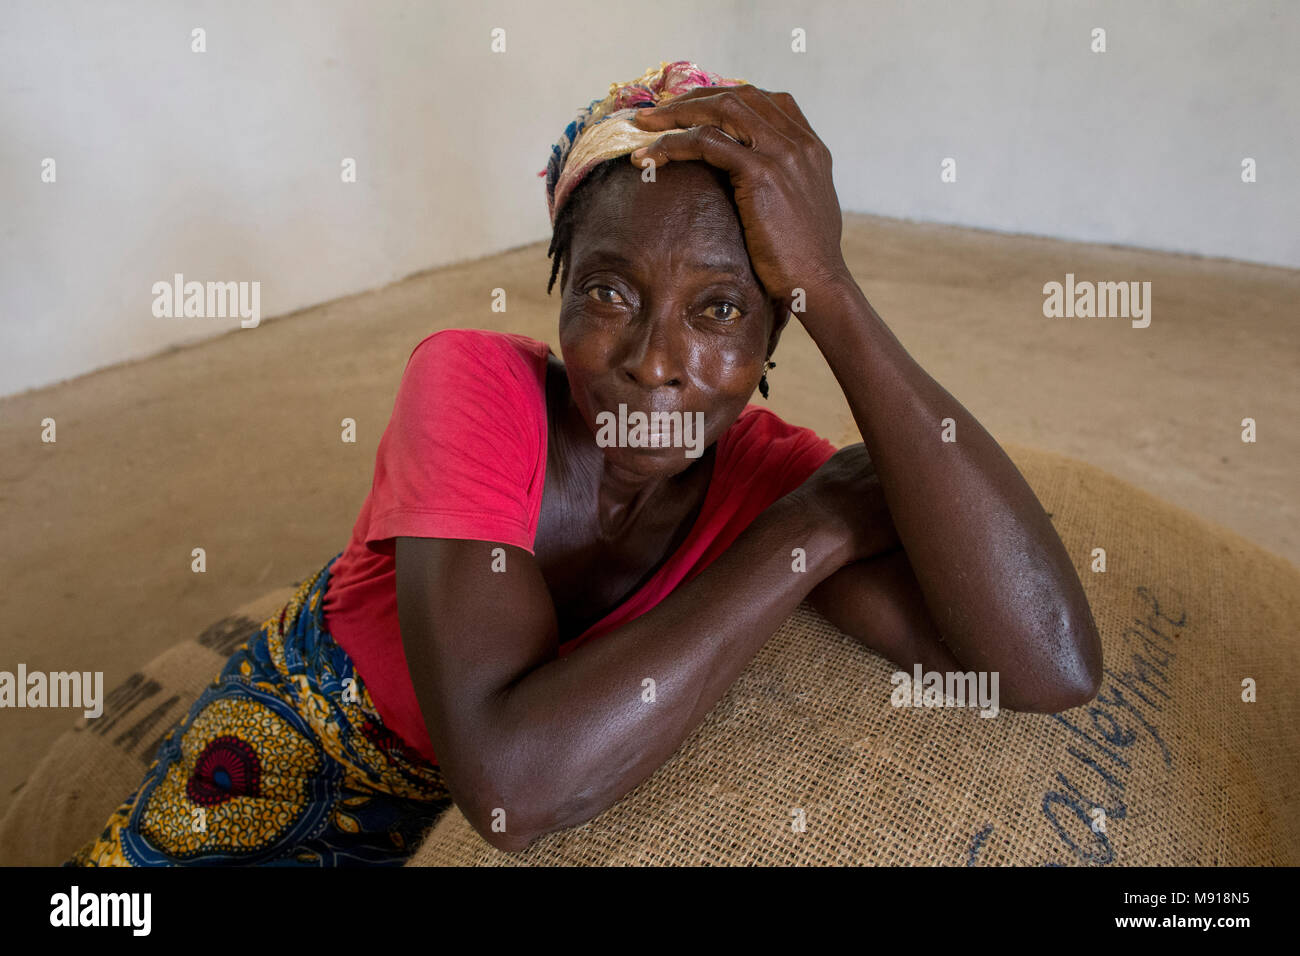 Ivory Coast. Cocoa producer's wife. Stock Photo